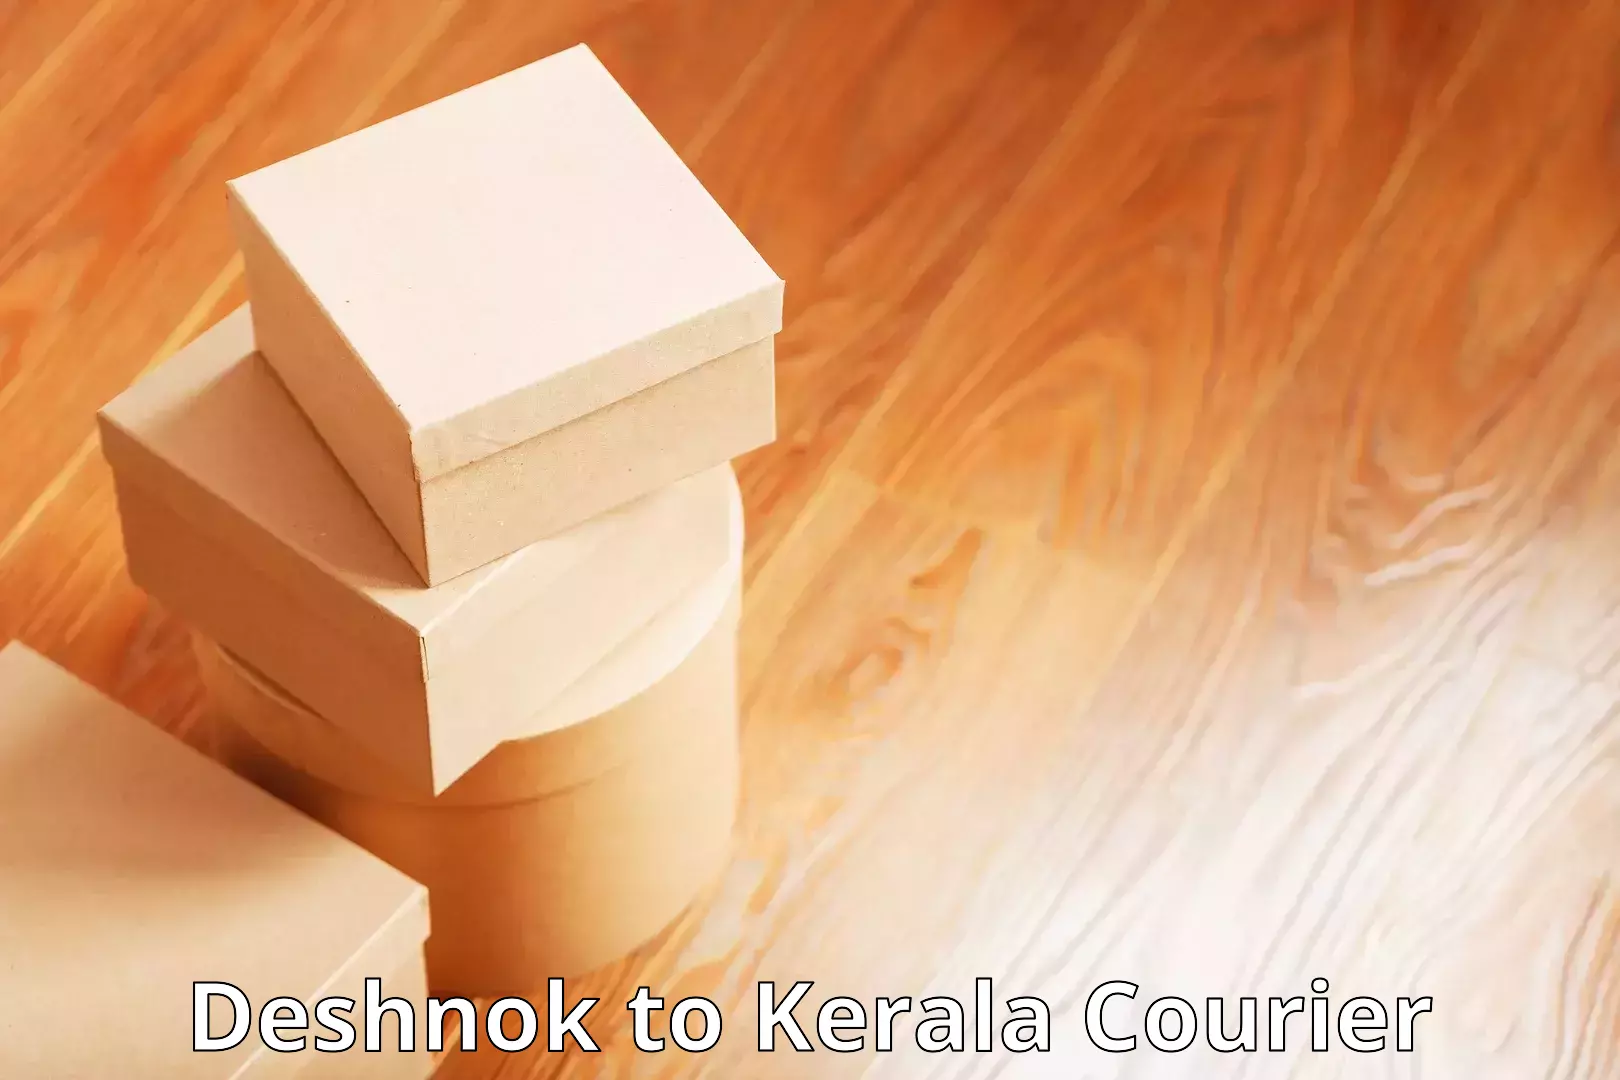 Modern courier technology Deshnok to Kerala